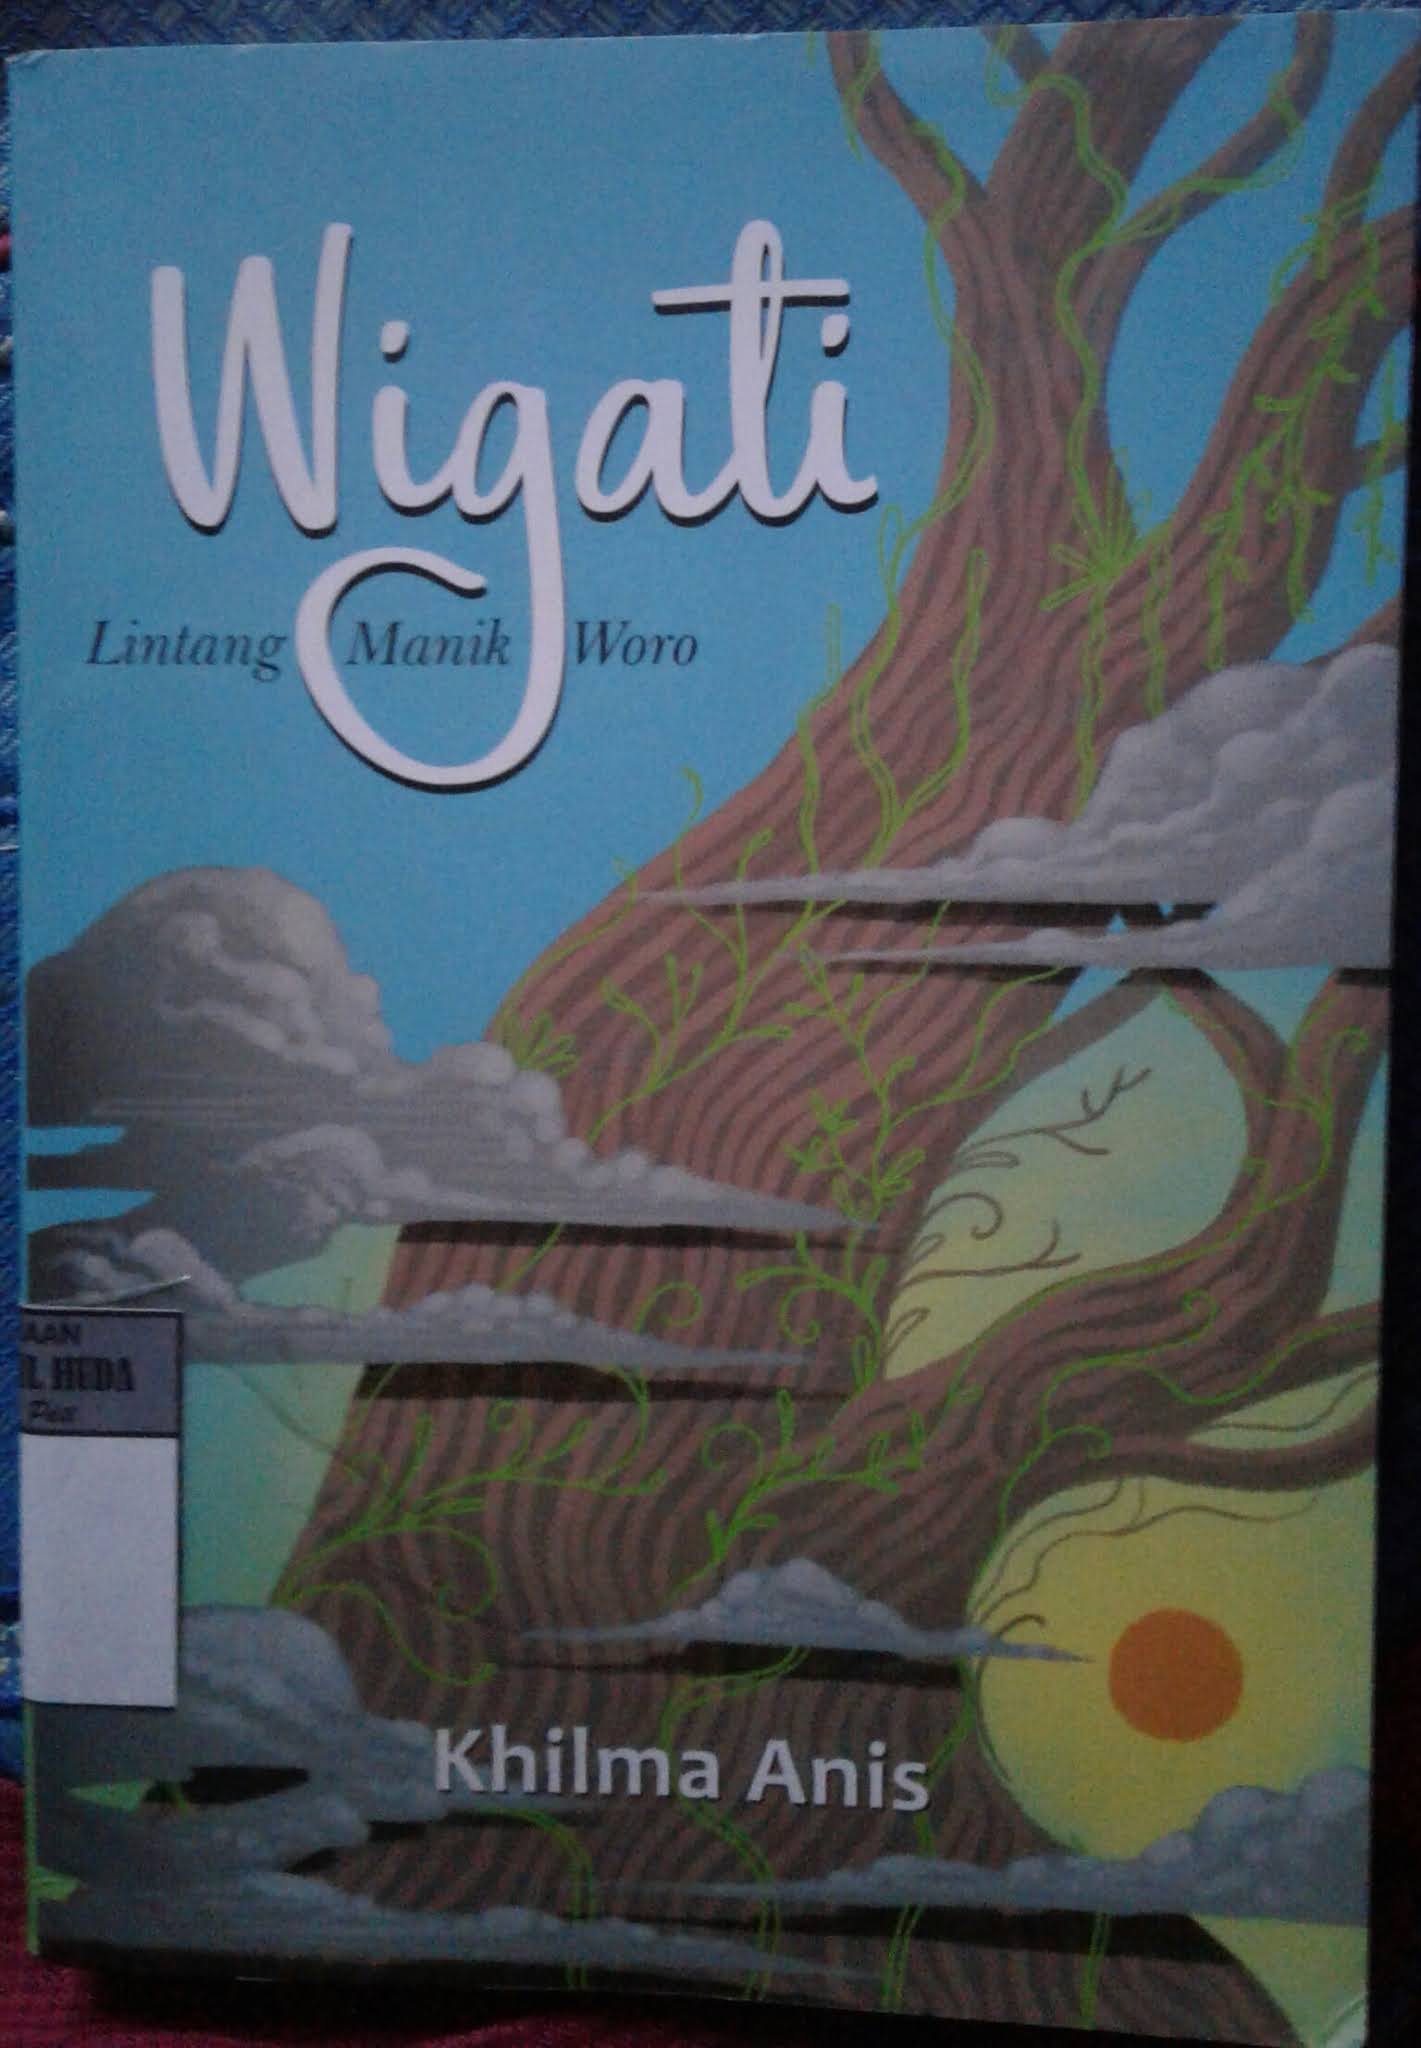 review novel wigati